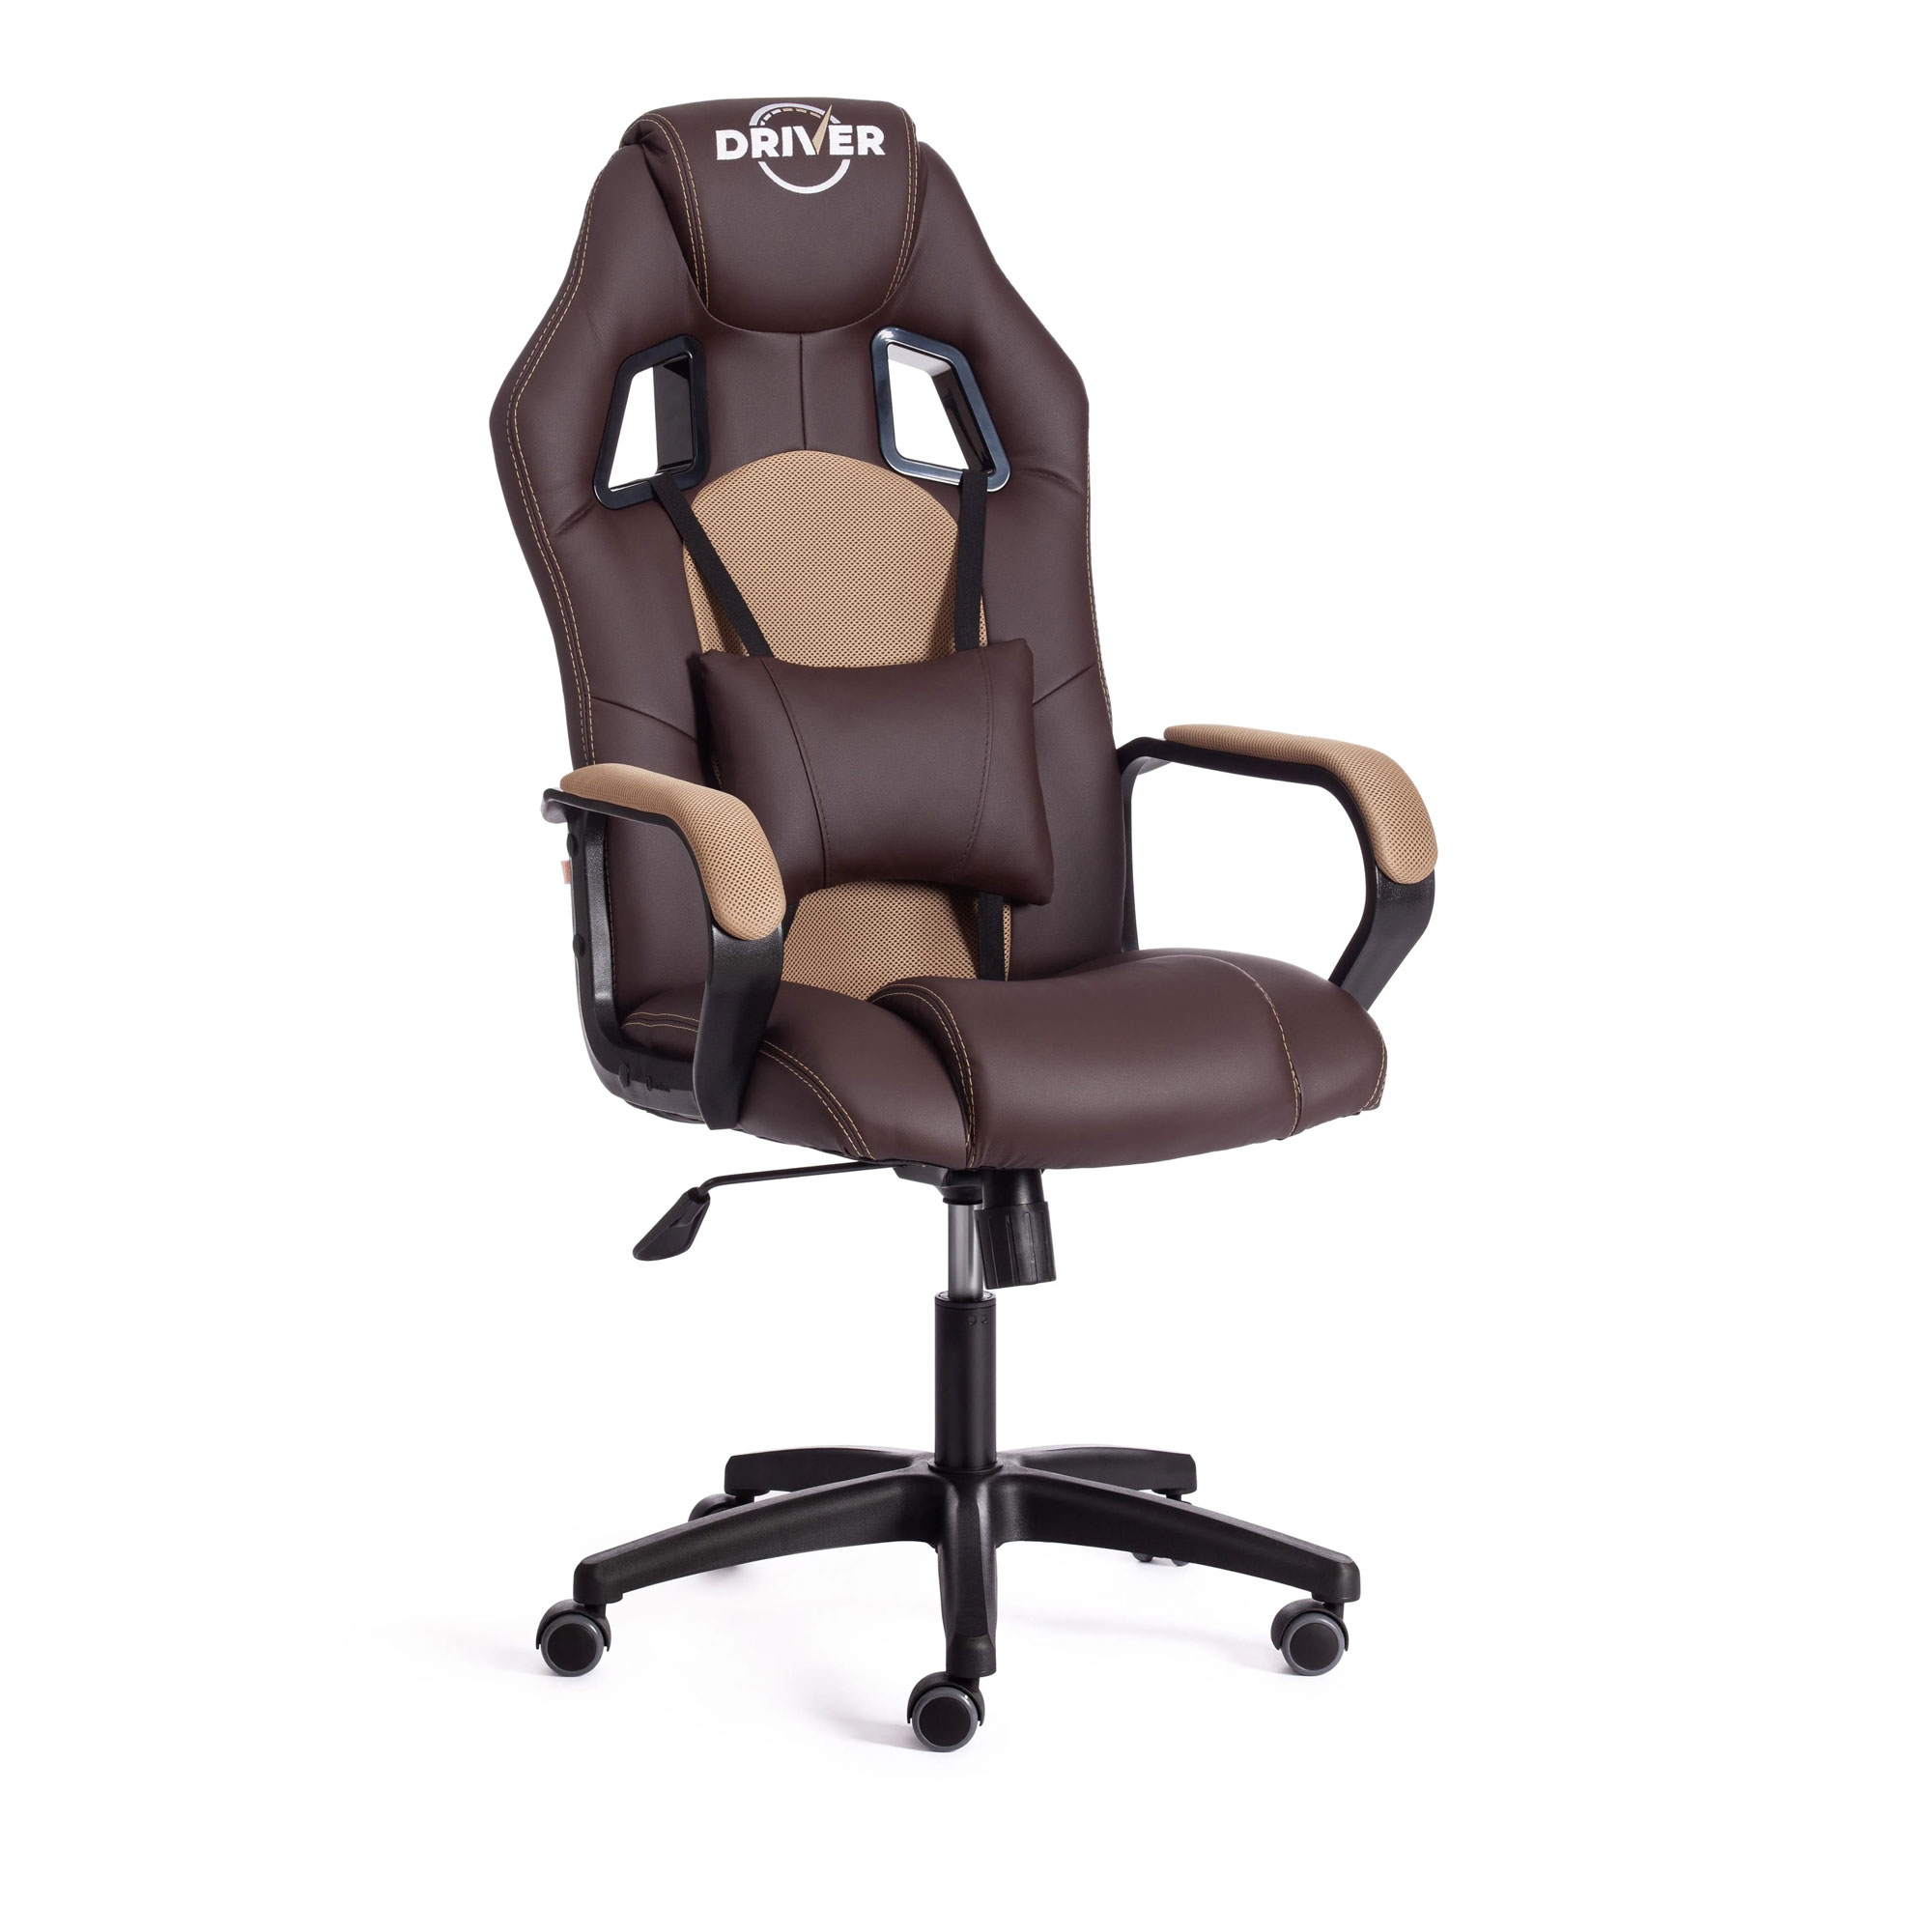 Кресло компьютерное TC Driver искусственная кожа коричневое с бронзовым 55х49х126 см кресло компьютерное tc driver искусственная кожа коричневое с бронзовым 55х49х126 см